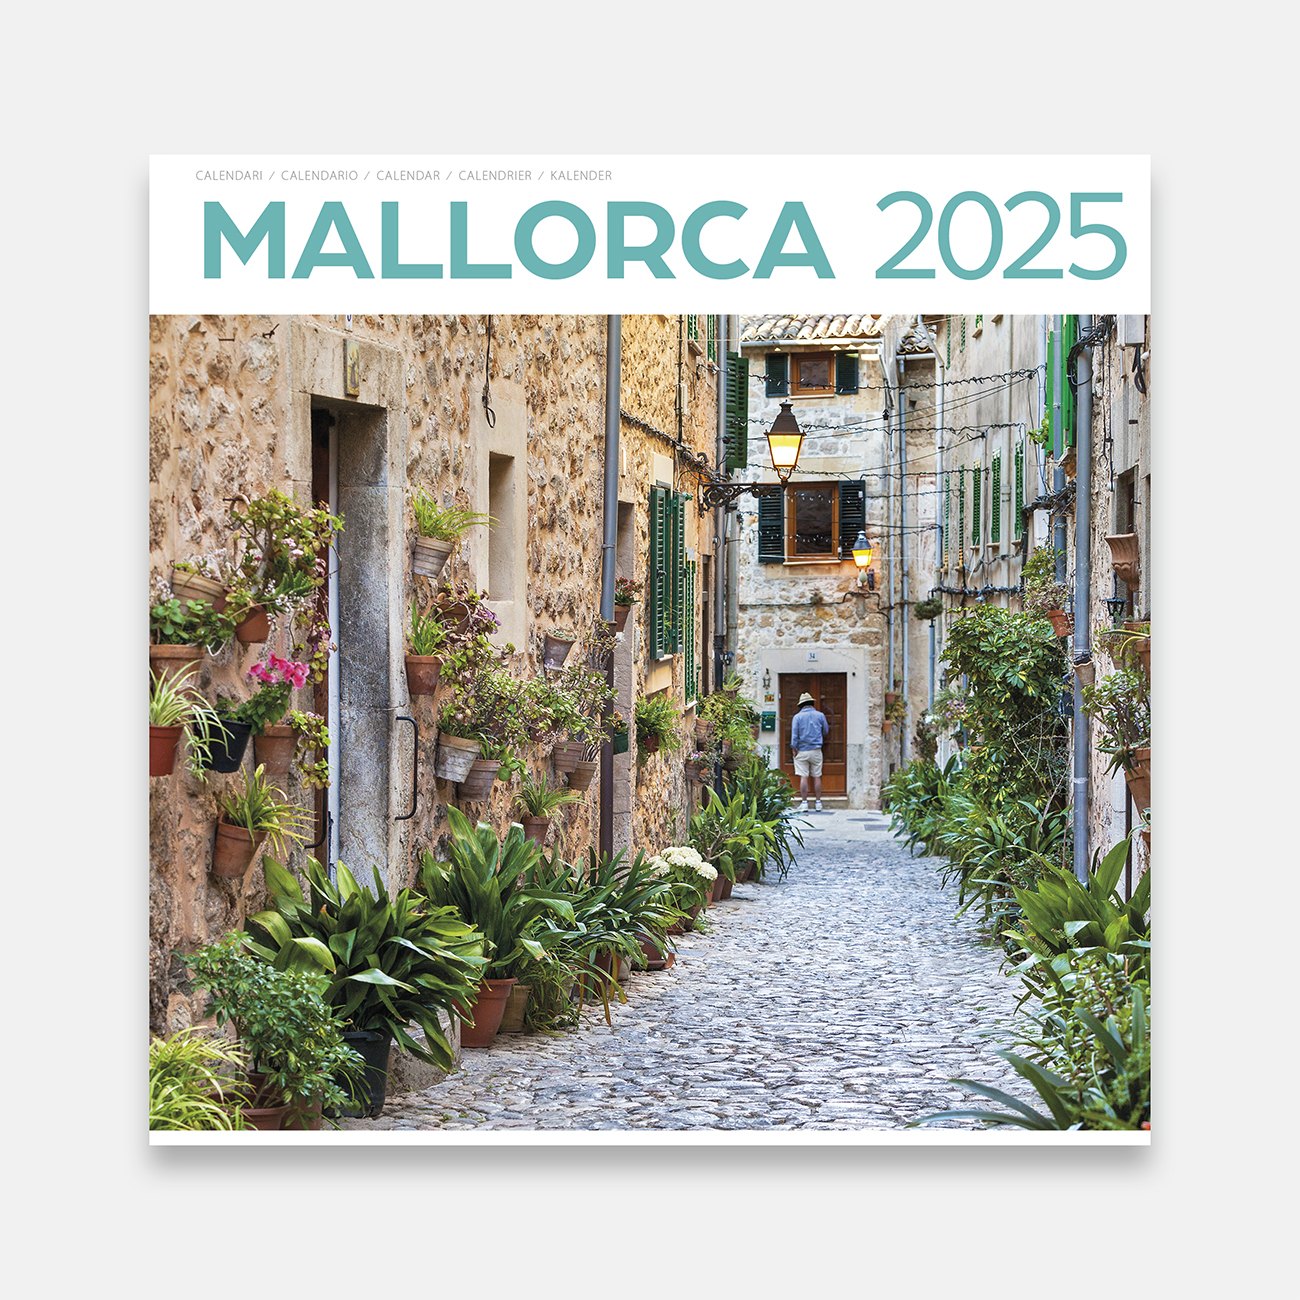 Calendario 2025 Mallorca 25ma2 calendario pared 2025 mallorca